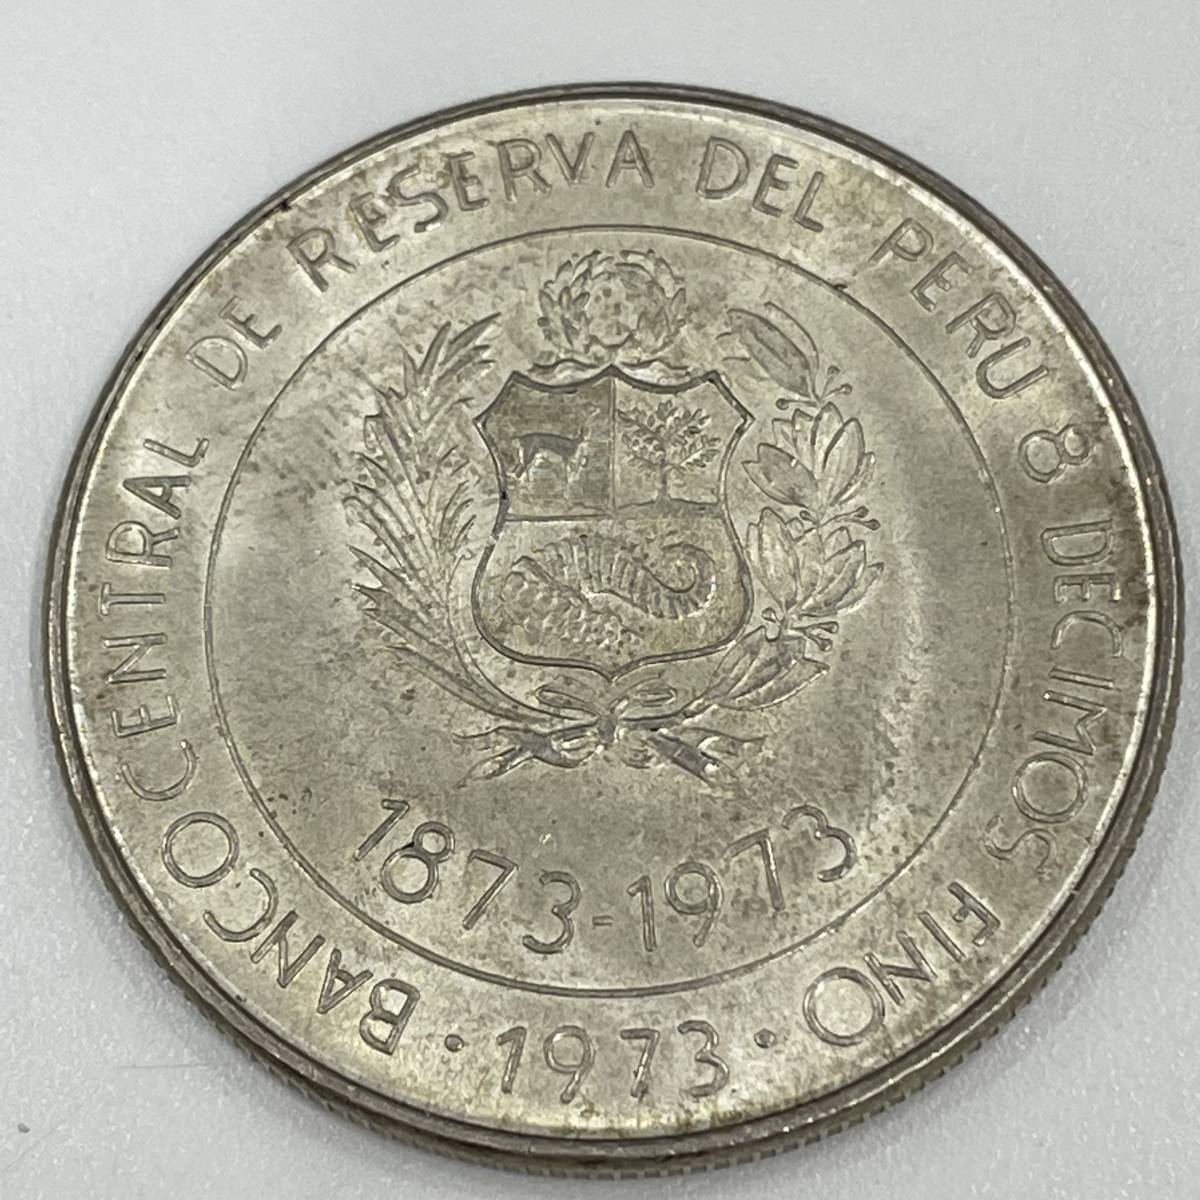 #5163 ペルー修好100周年記念 100ソル 銀貨 100 soles de oro 1873年-1973年 古銭 外国銭 コイン コレクション 現状品の画像2